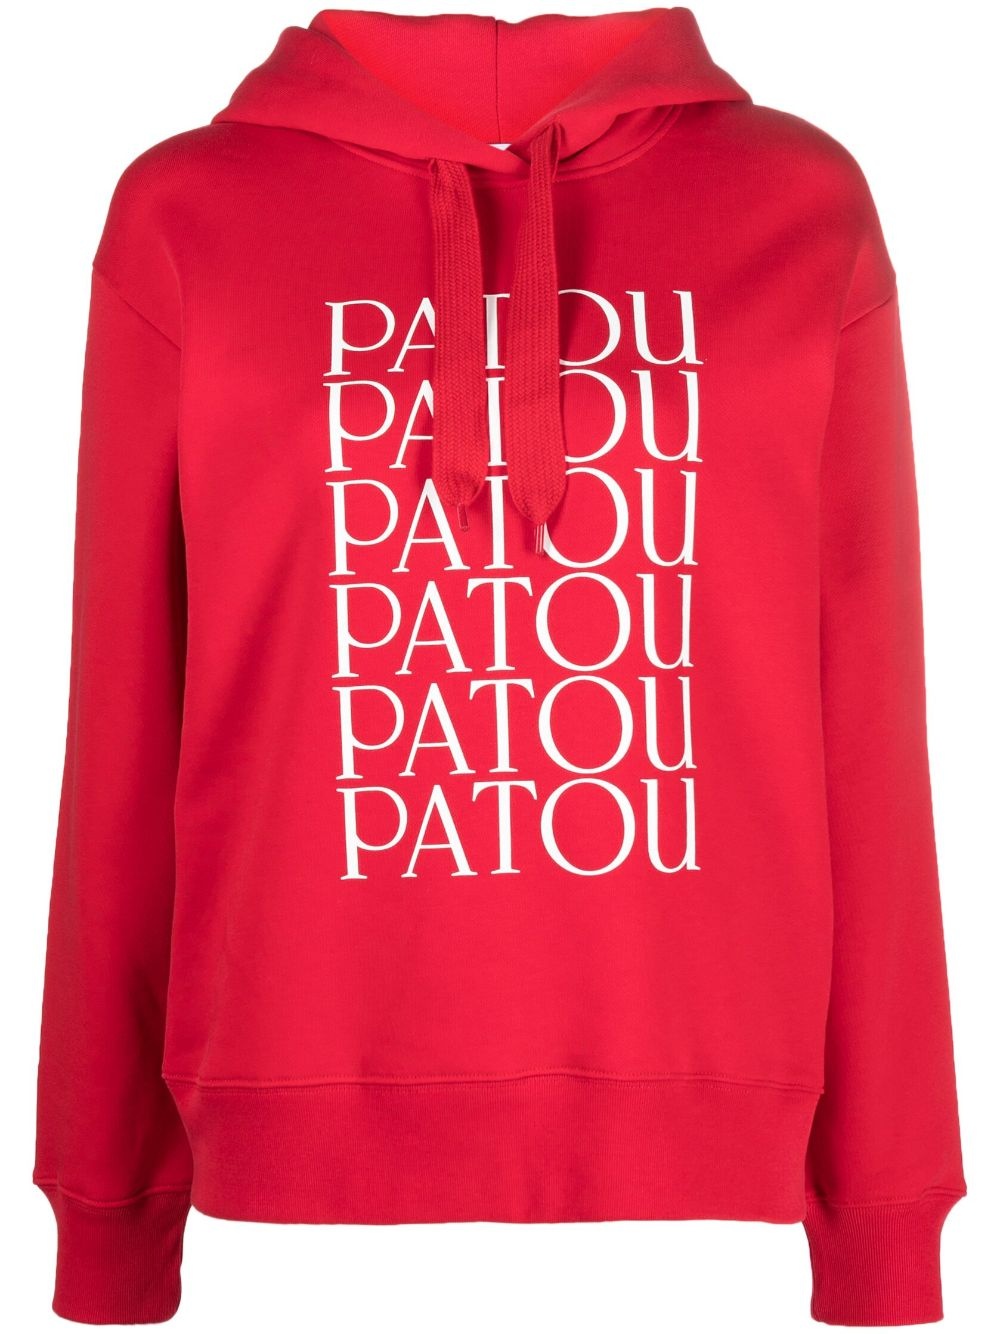 Patou Patou cotton hoodie - 1